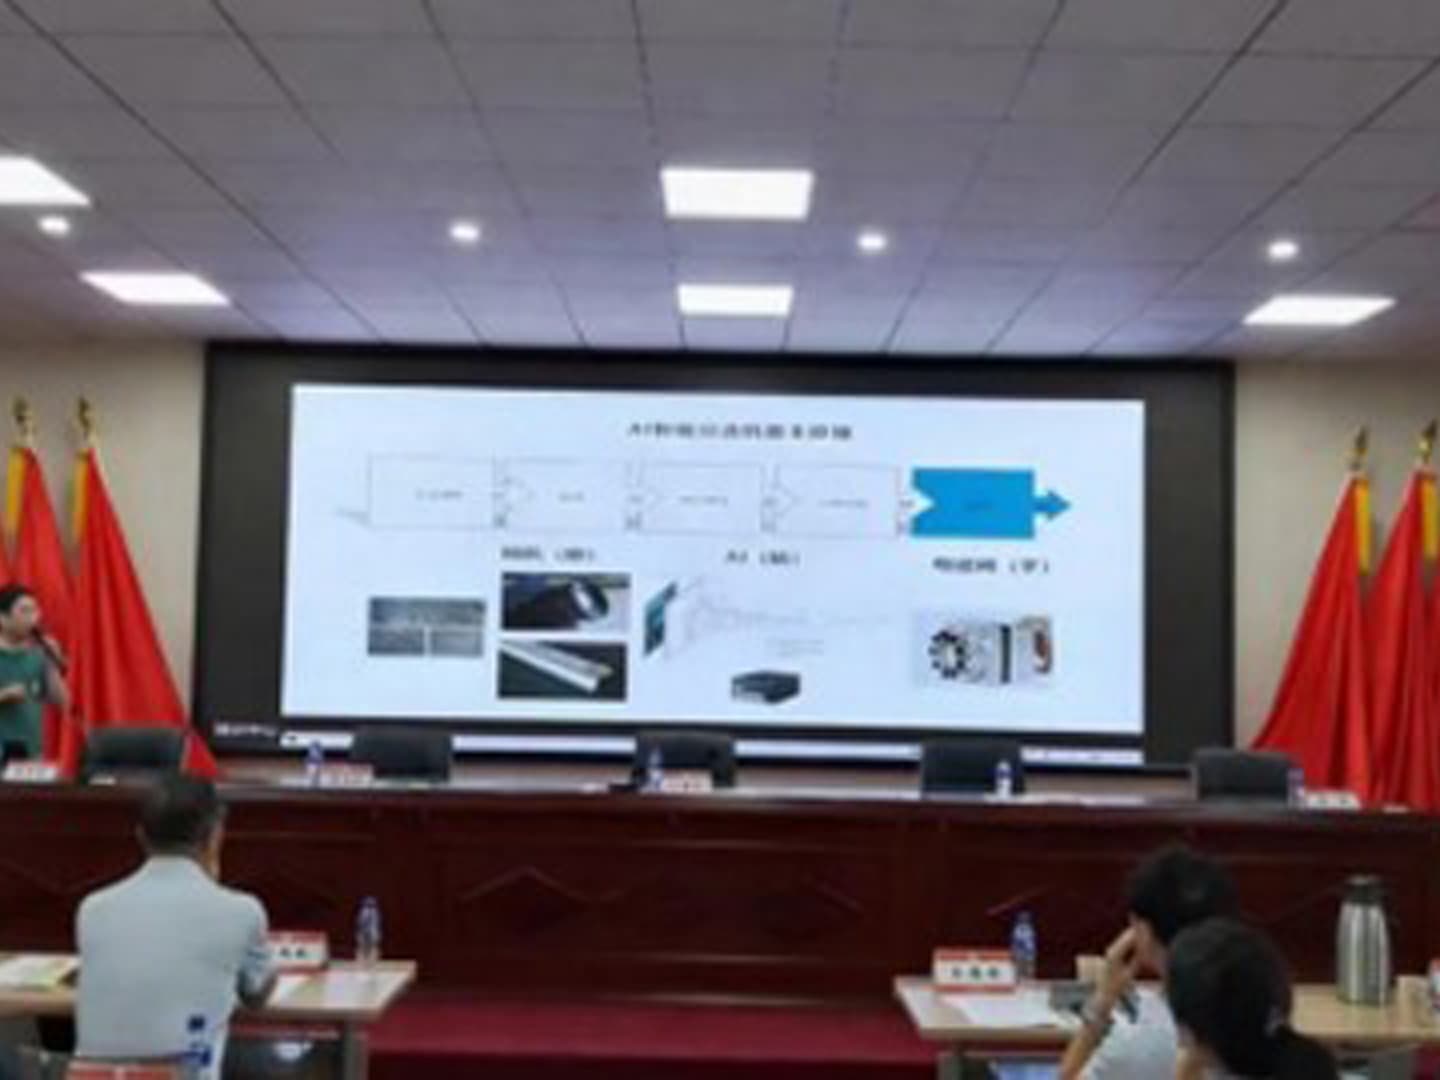 Shandong Gold провела встречу по обмену технологиями переработки полезных ископаемых. Минде был приглашен